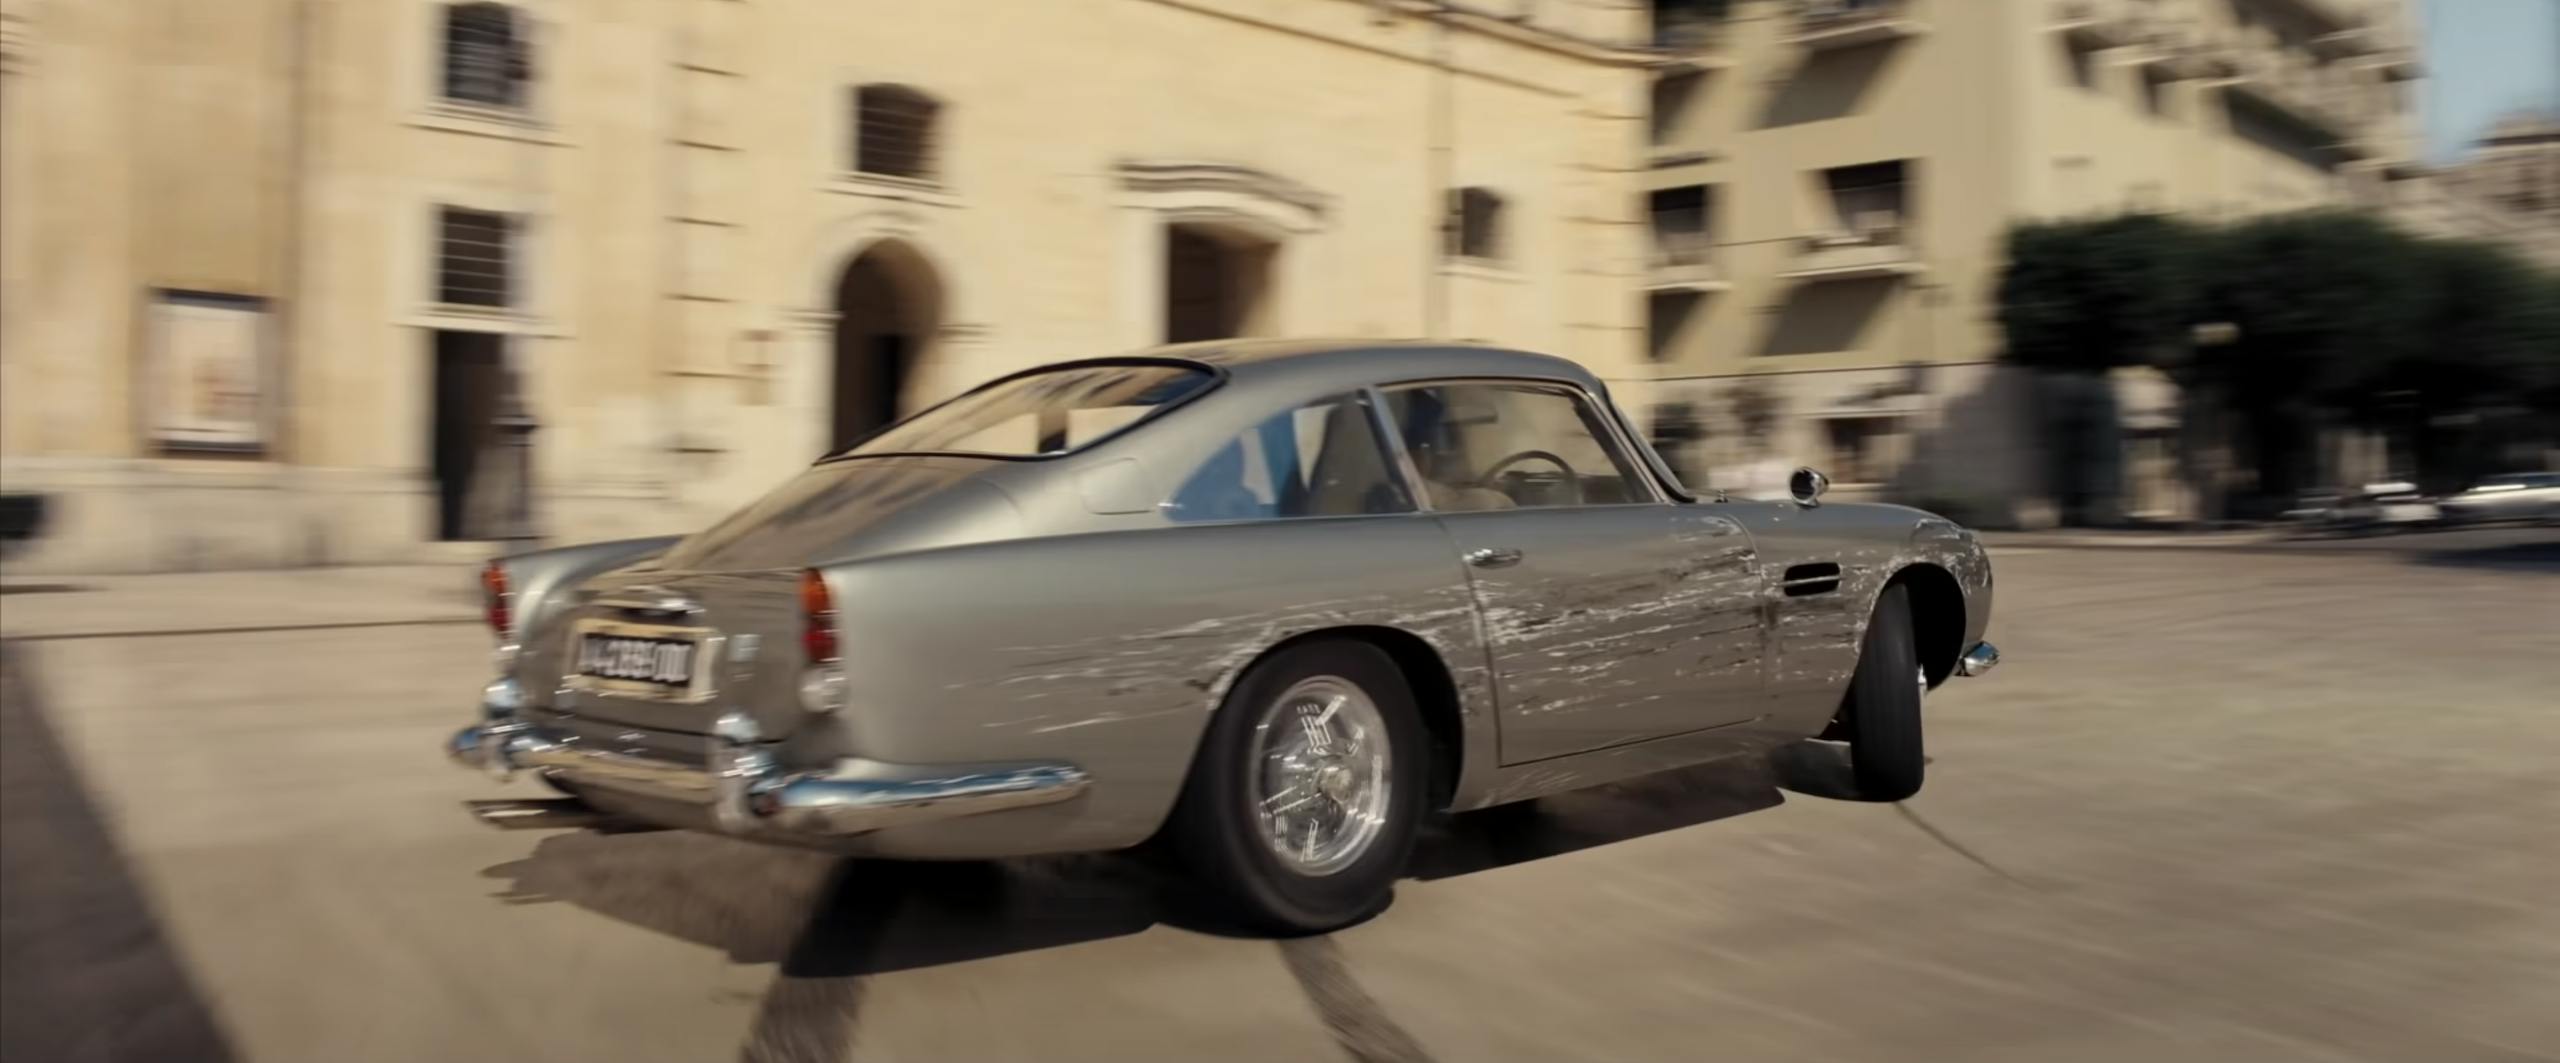 James Bond No Time to Die Aston Martin DB5